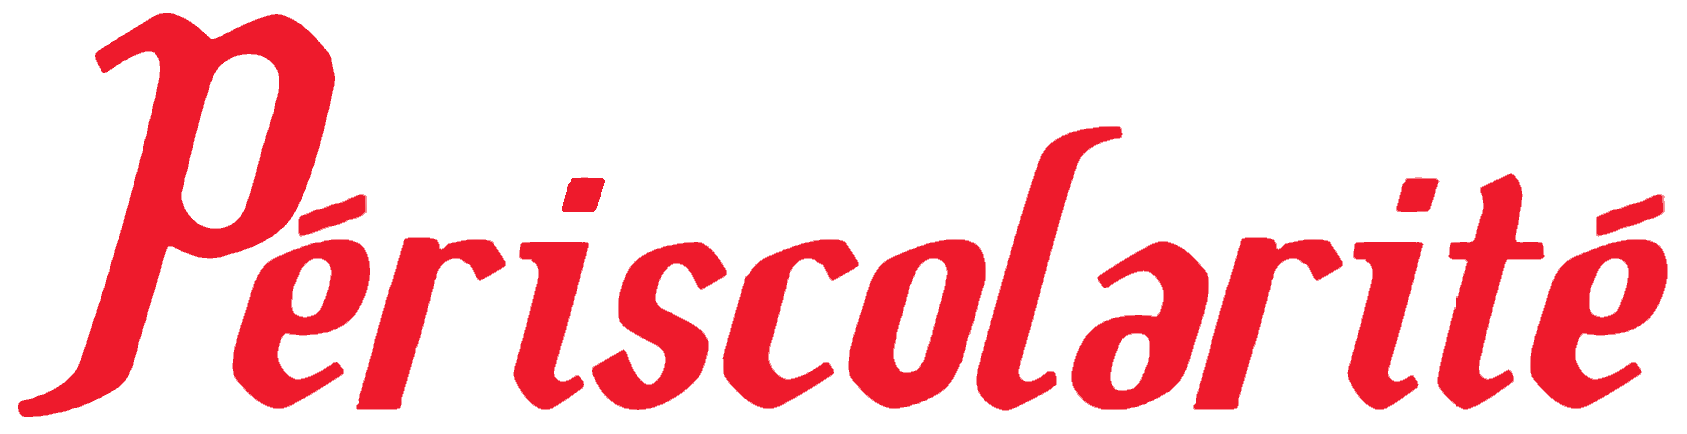 Logo Périscolarité.com